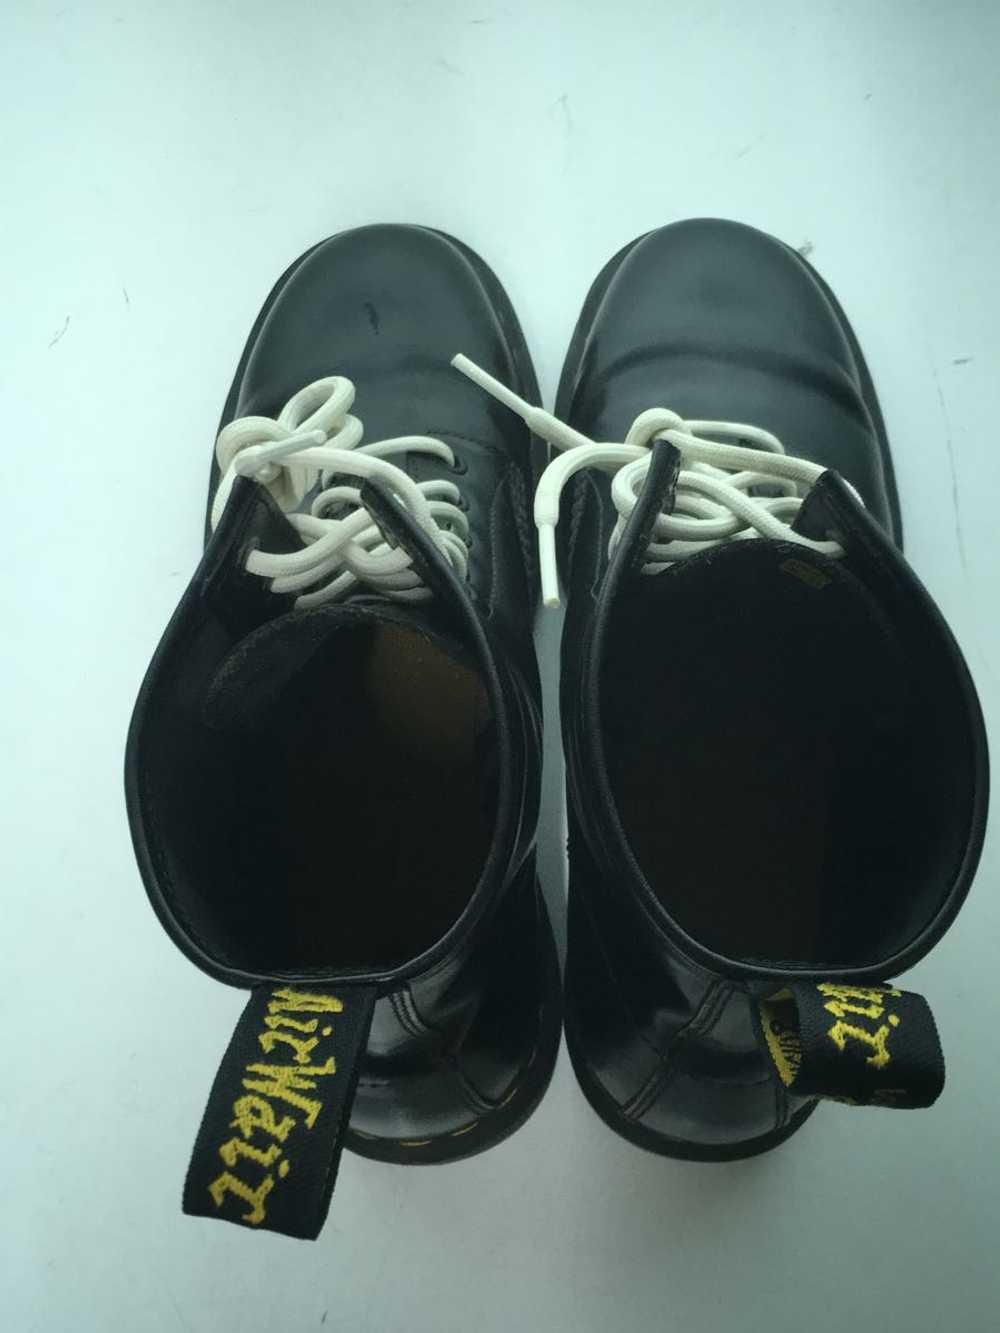 Dr.Martens Boots/Uk9/Blk/Leather/11822/Wrinkle Sh… - image 3